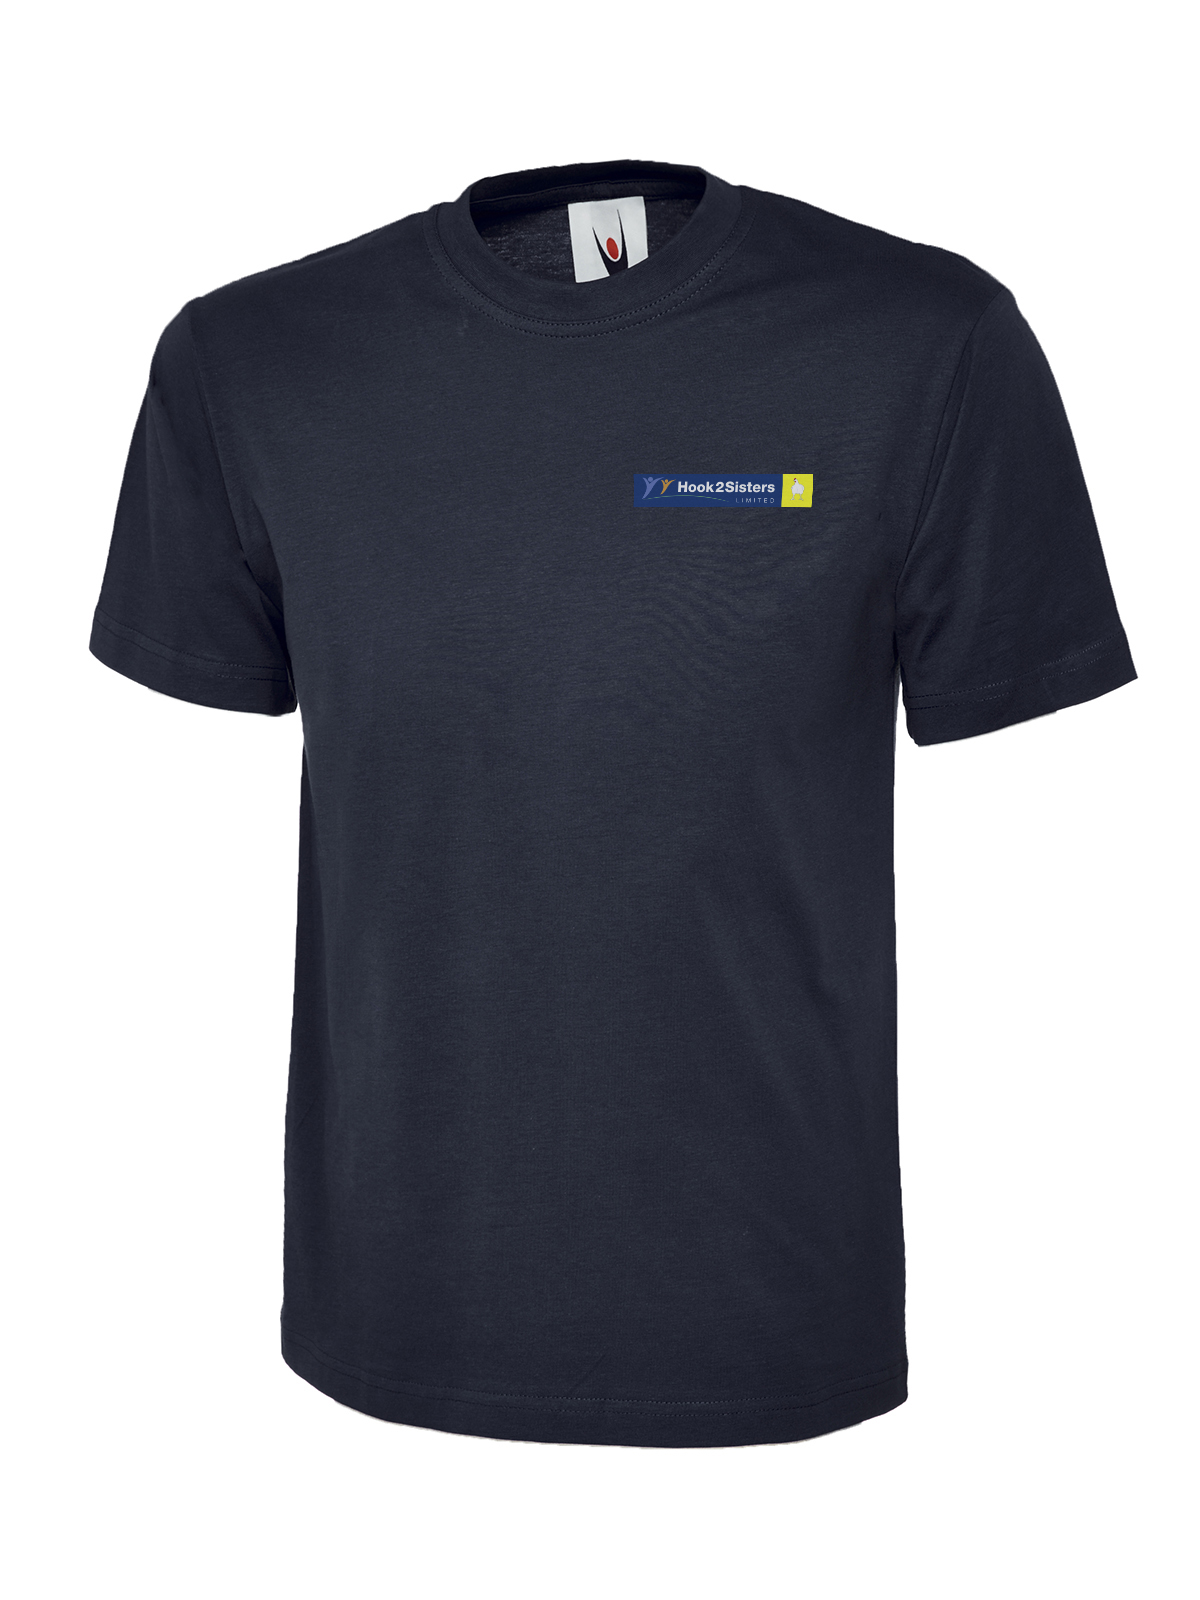 Hook2Sisters Ltd - T-Shirt, Navy - Size 3XL